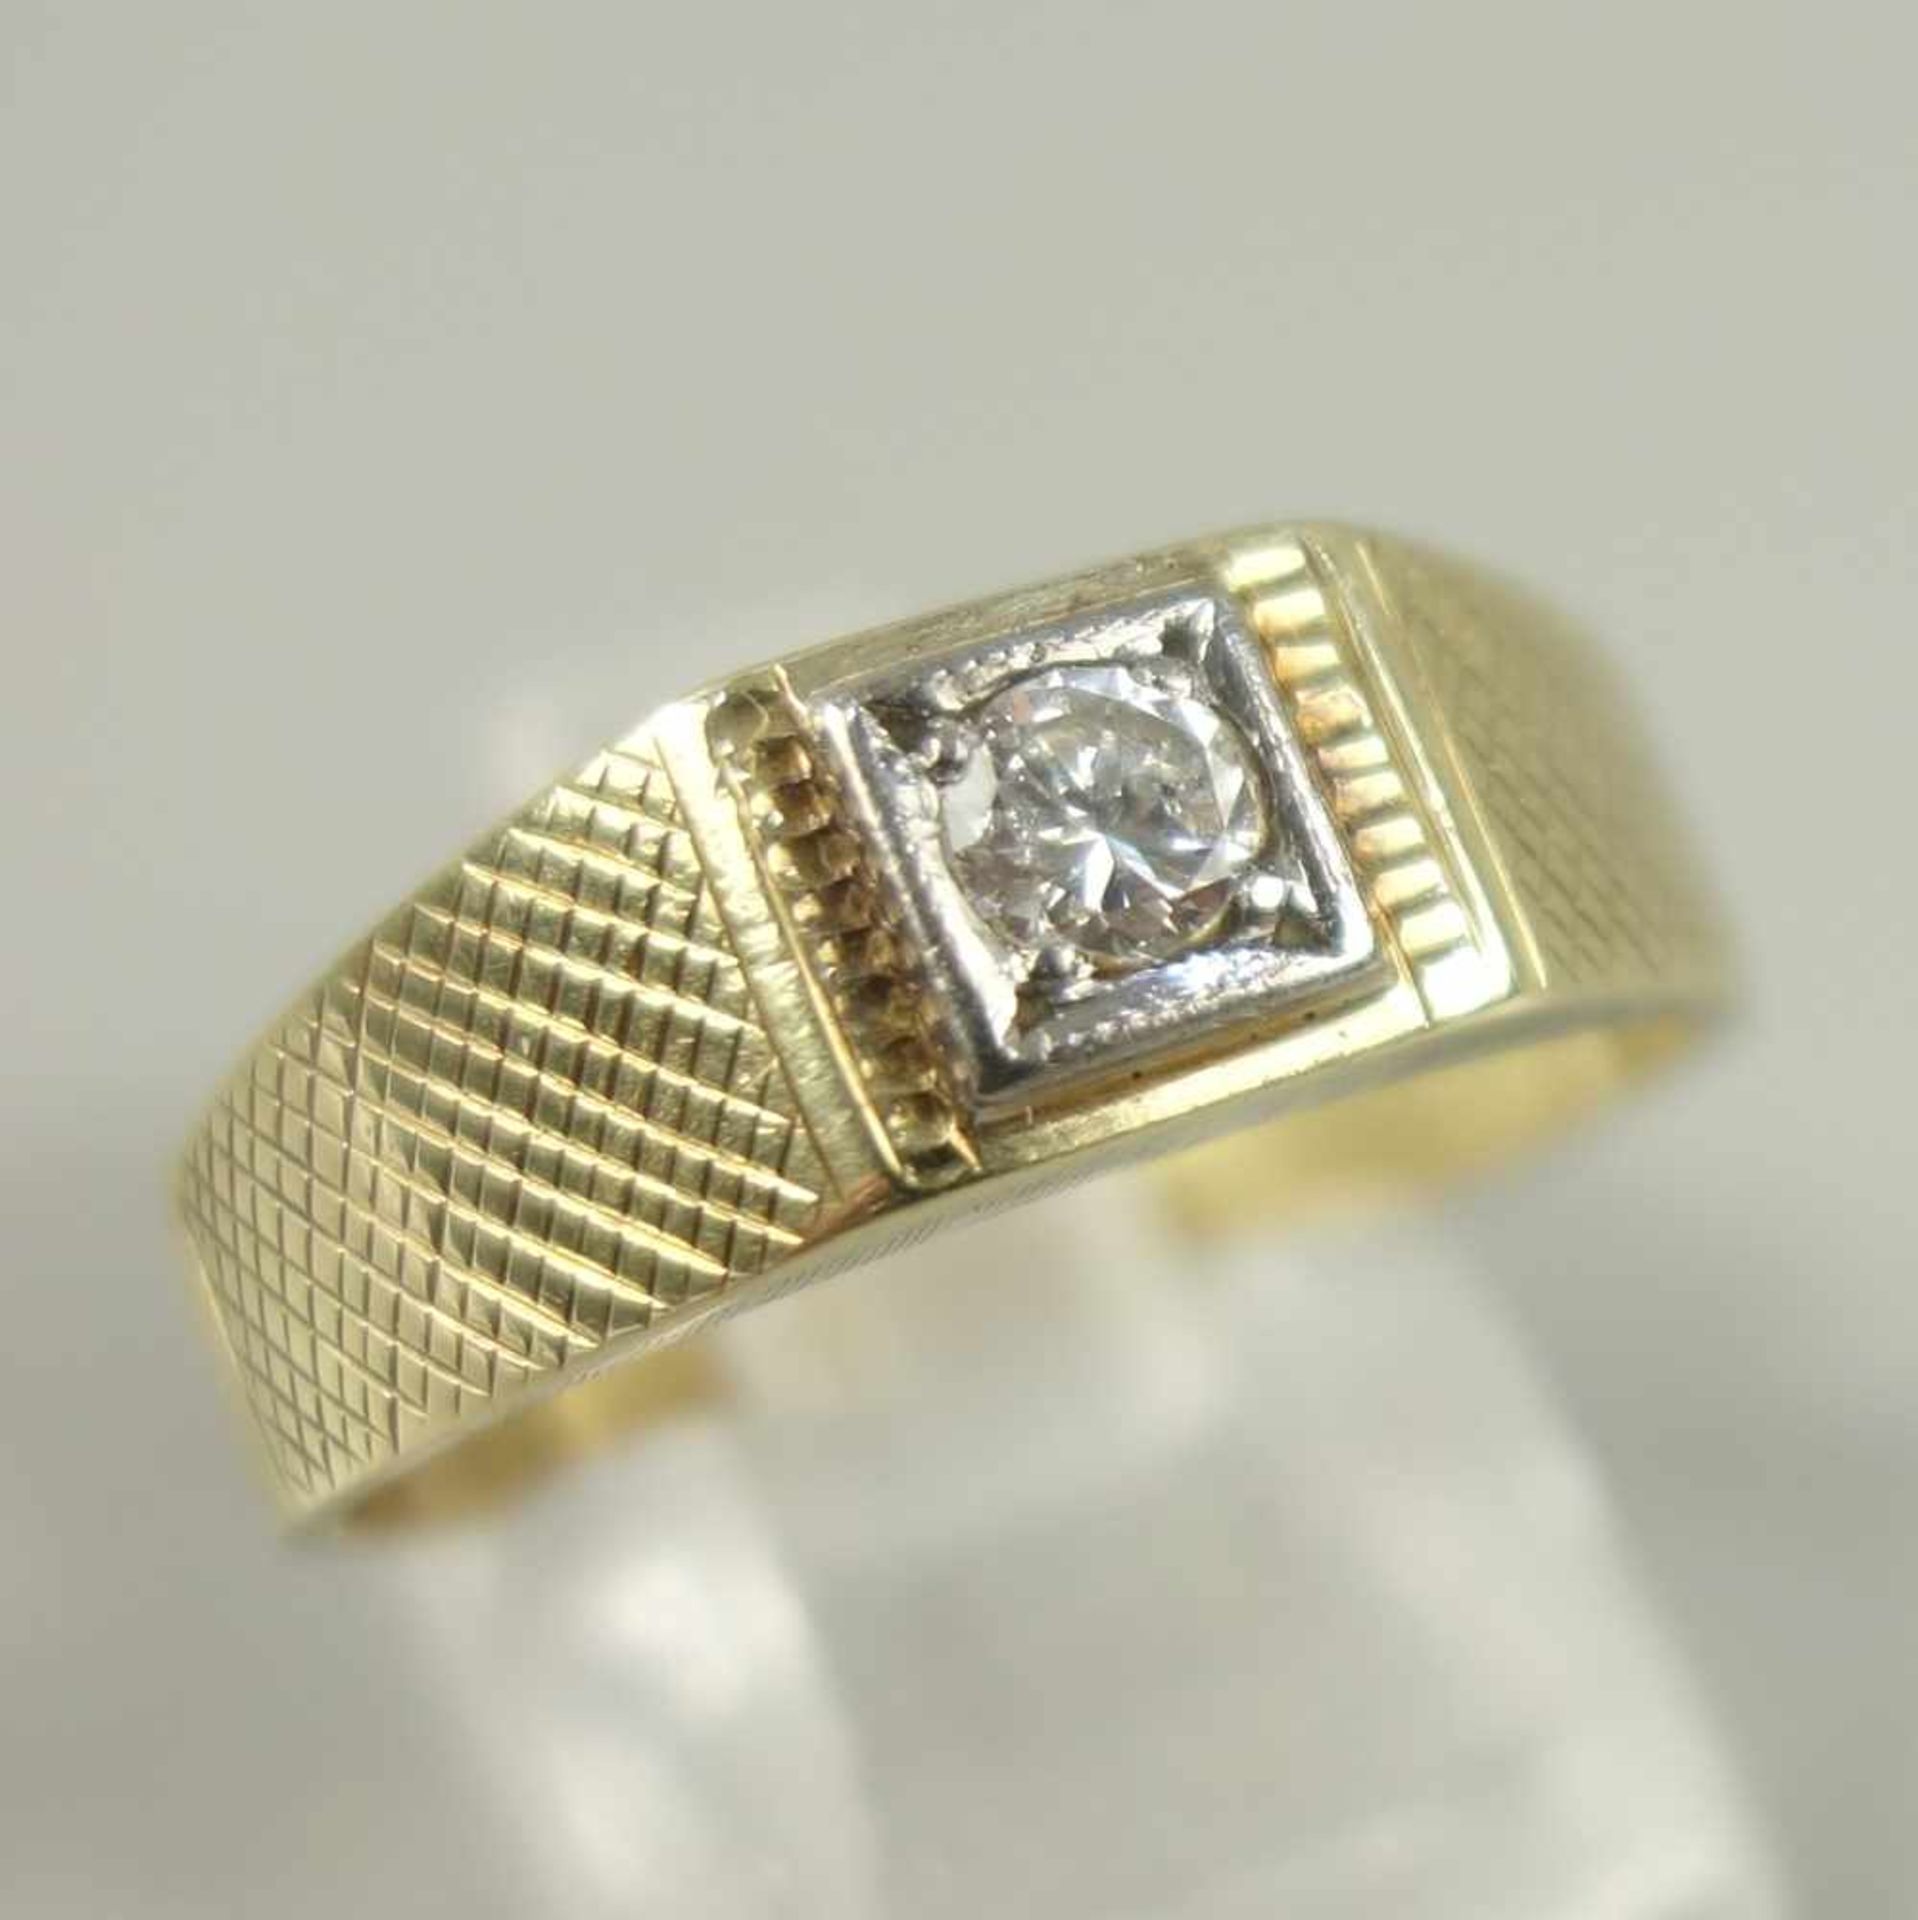 Diamant-Brillant-Ring, 585er Gelbgold, Gew.5,39g, Dia.-Brill., ca.0,15ct, quadratische